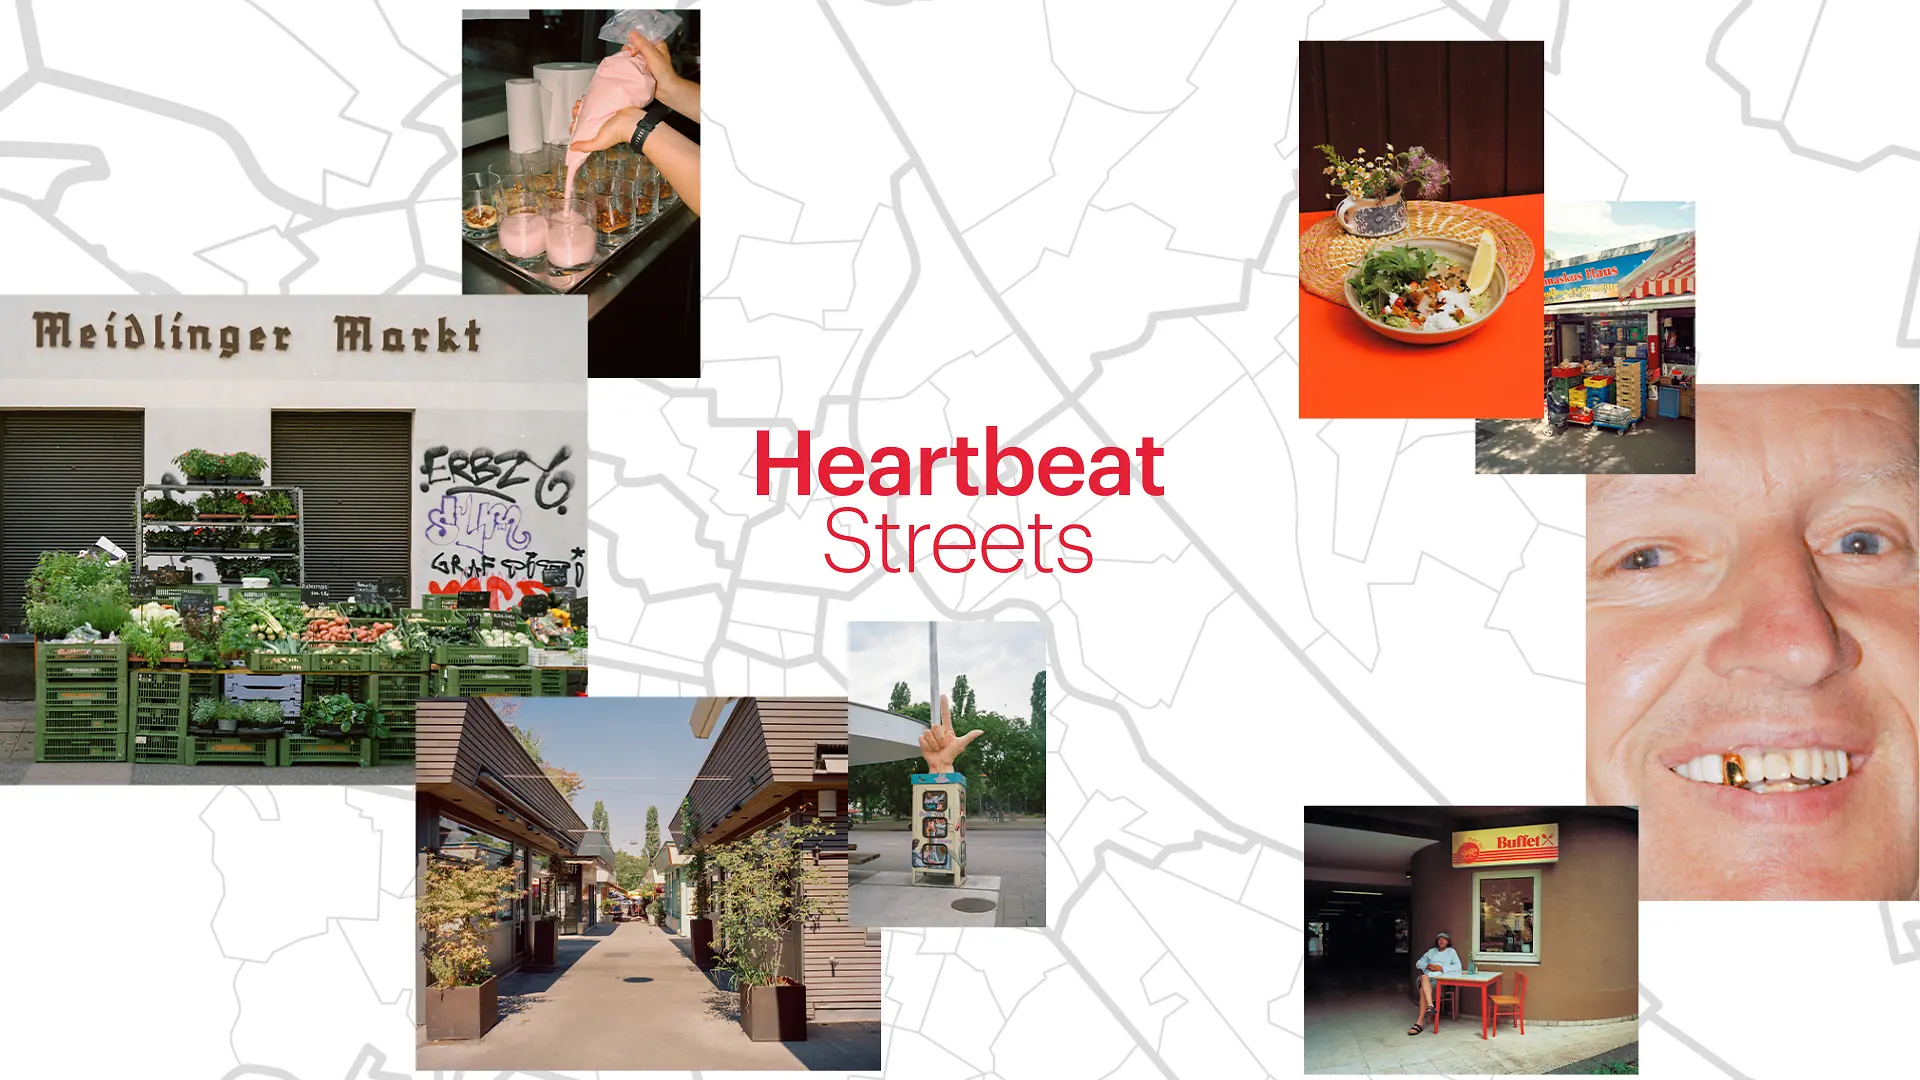 Heartbeat Streets